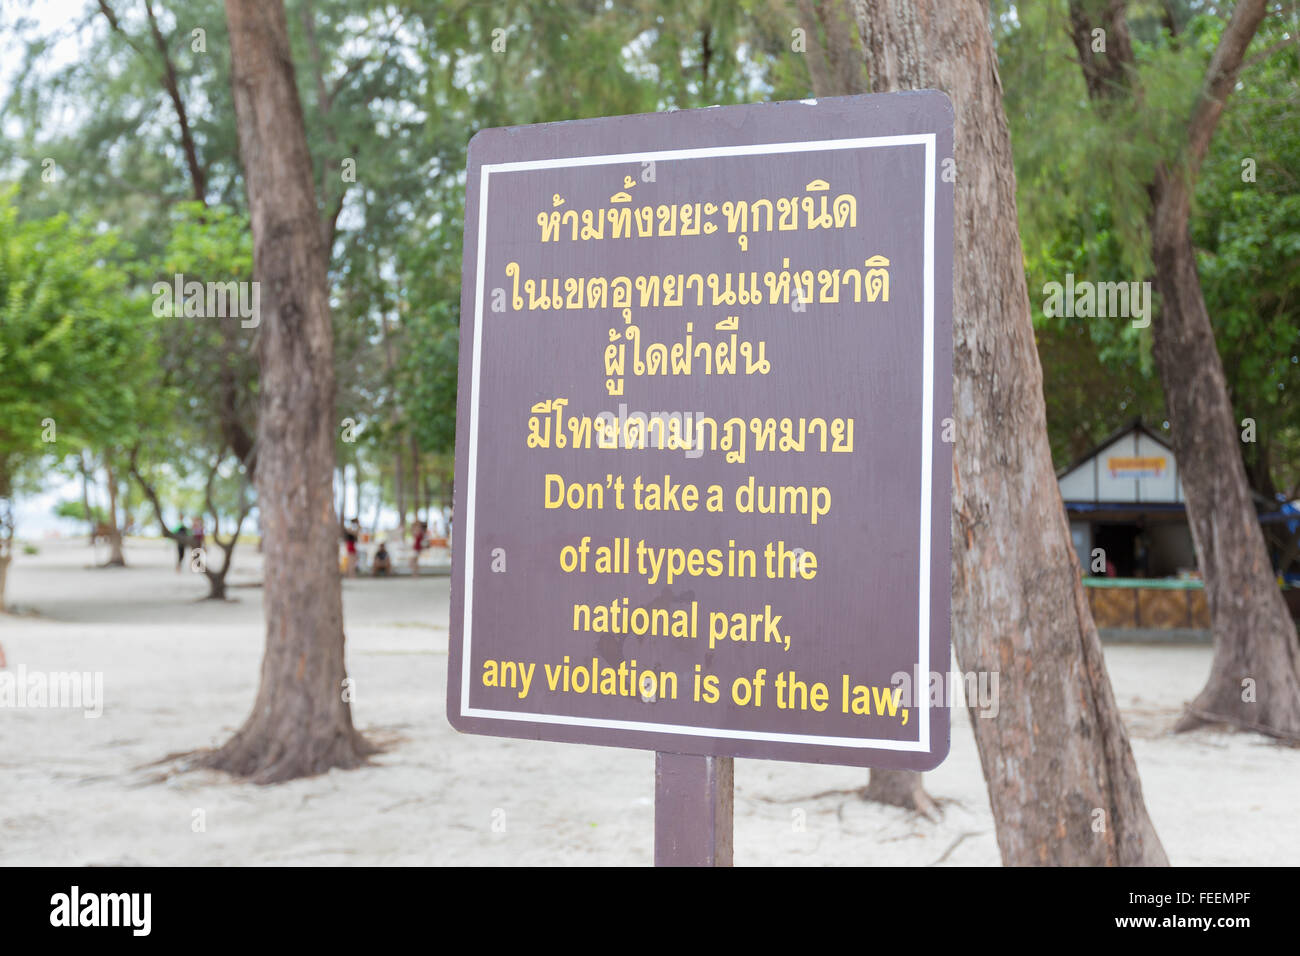 Divertente errore in inglese su una spiaggia sign in Thailandia Foto Stock